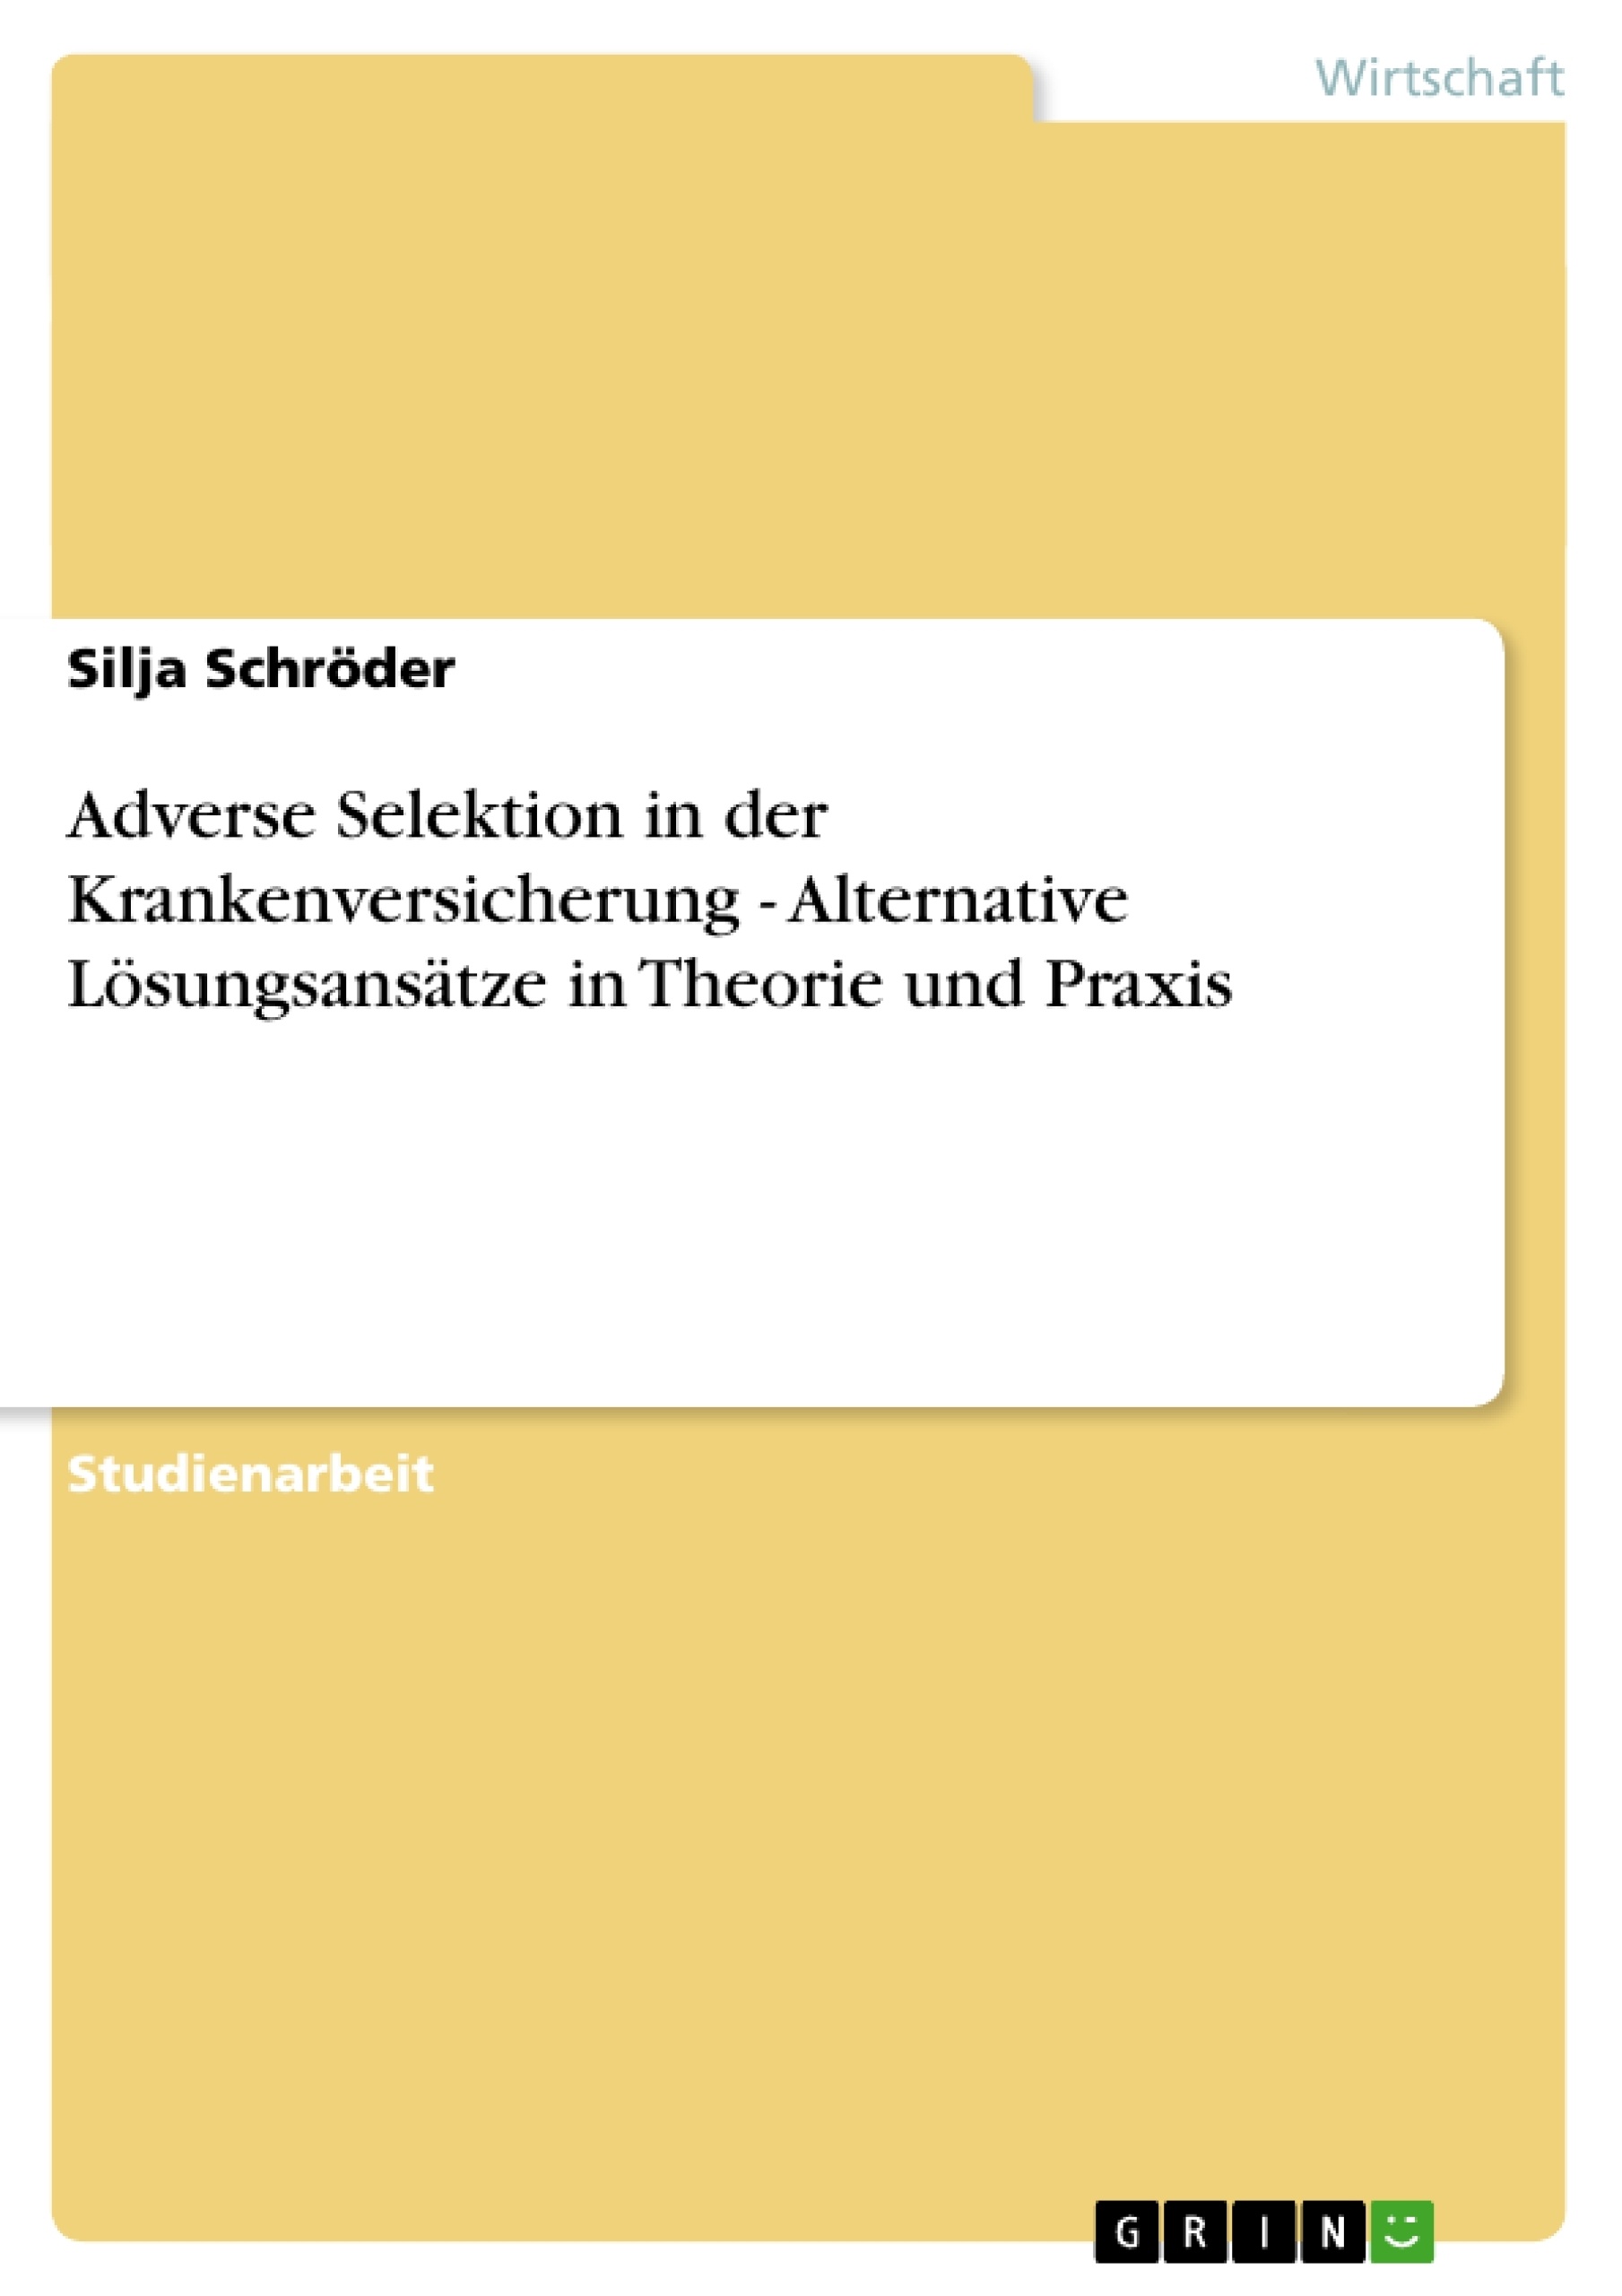 Title: Adverse Selektion in der Krankenversicherung - Alternative Lösungsansätze in Theorie und Praxis